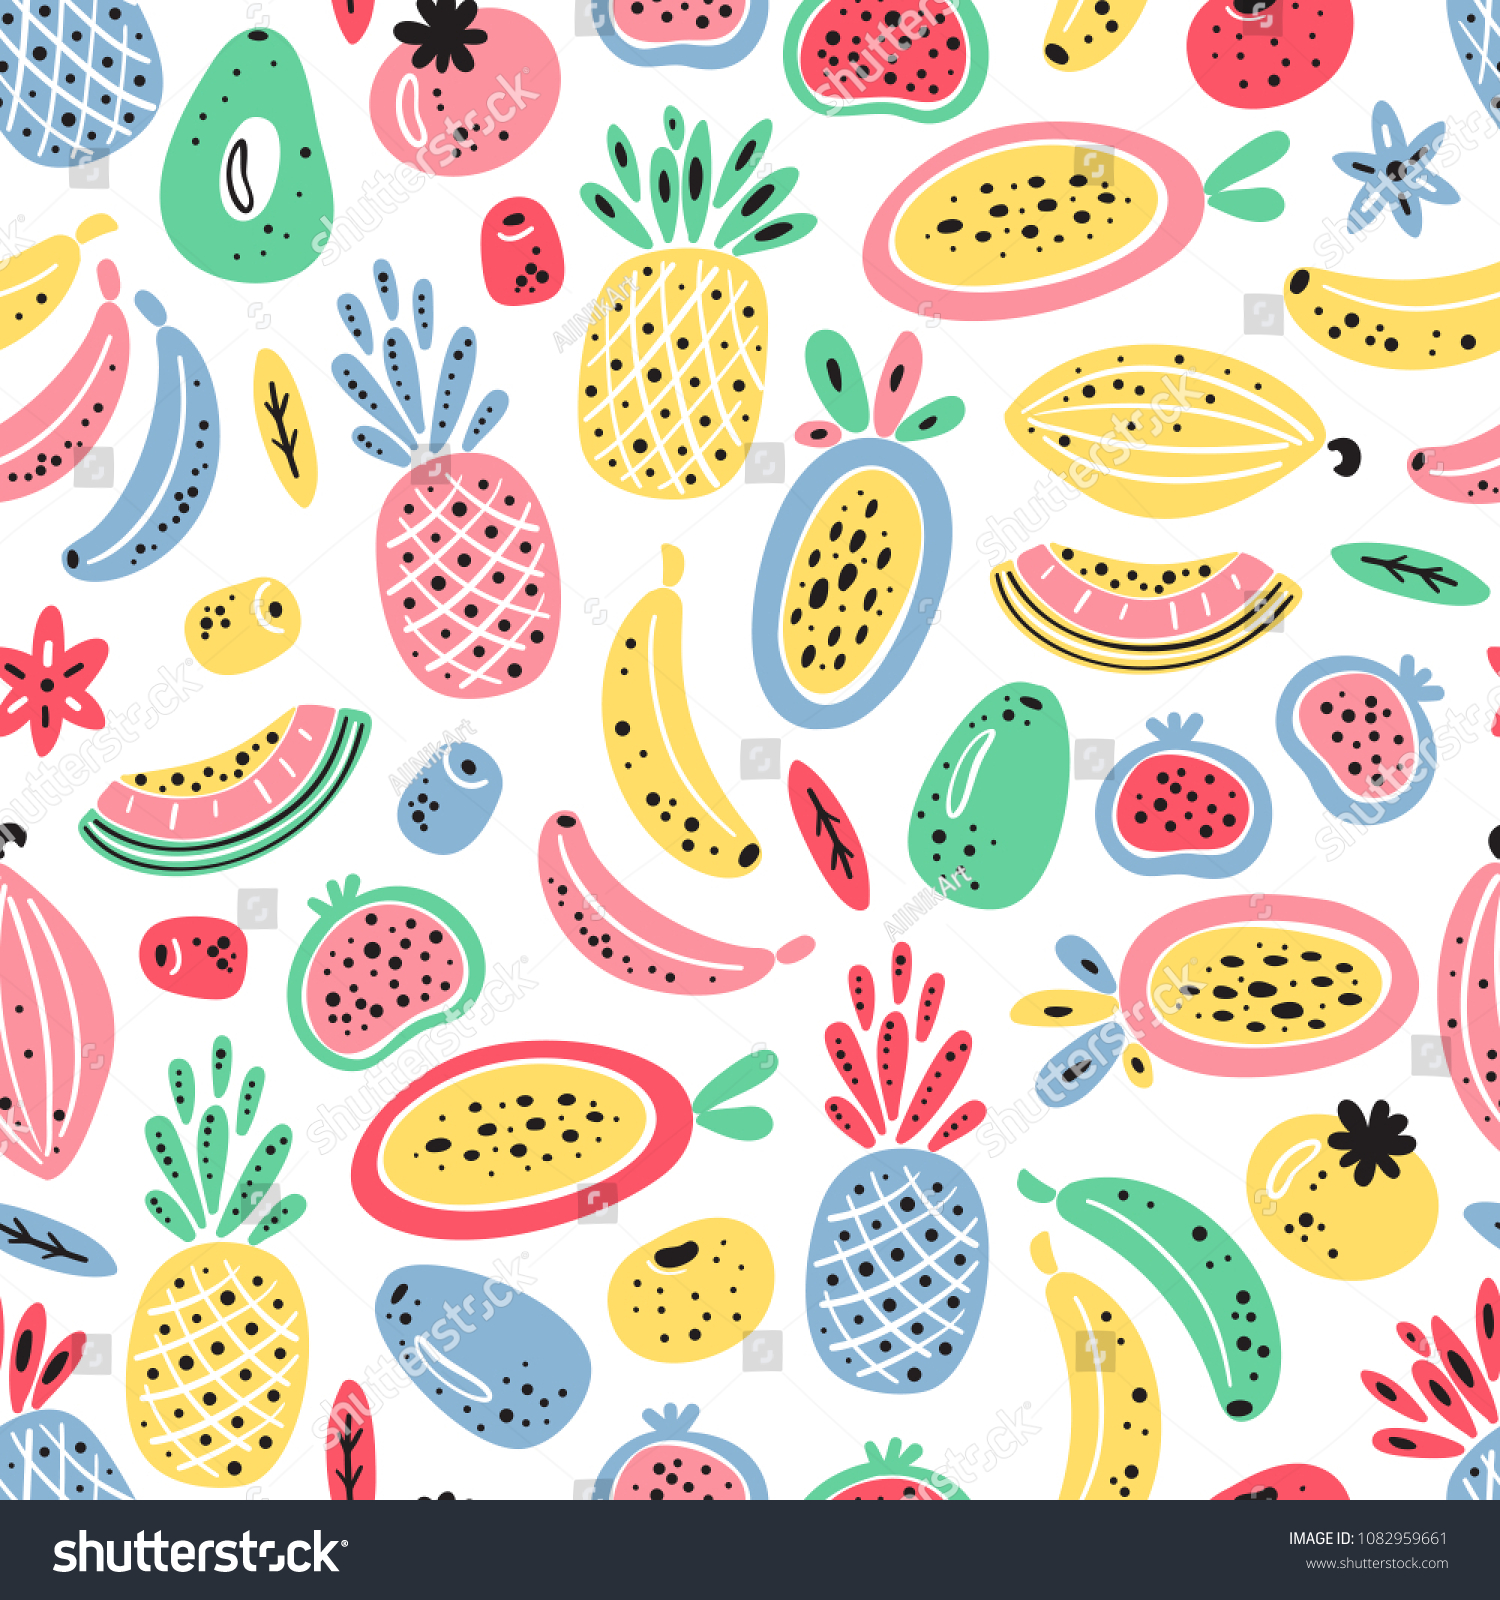 熱帯のフルーツとベリーのベクター画像シームレスパターン カラフルなフルーツの壁紙 健康的な夏の食べ物の背景 のベクター画像素材 ロイヤリティフリー